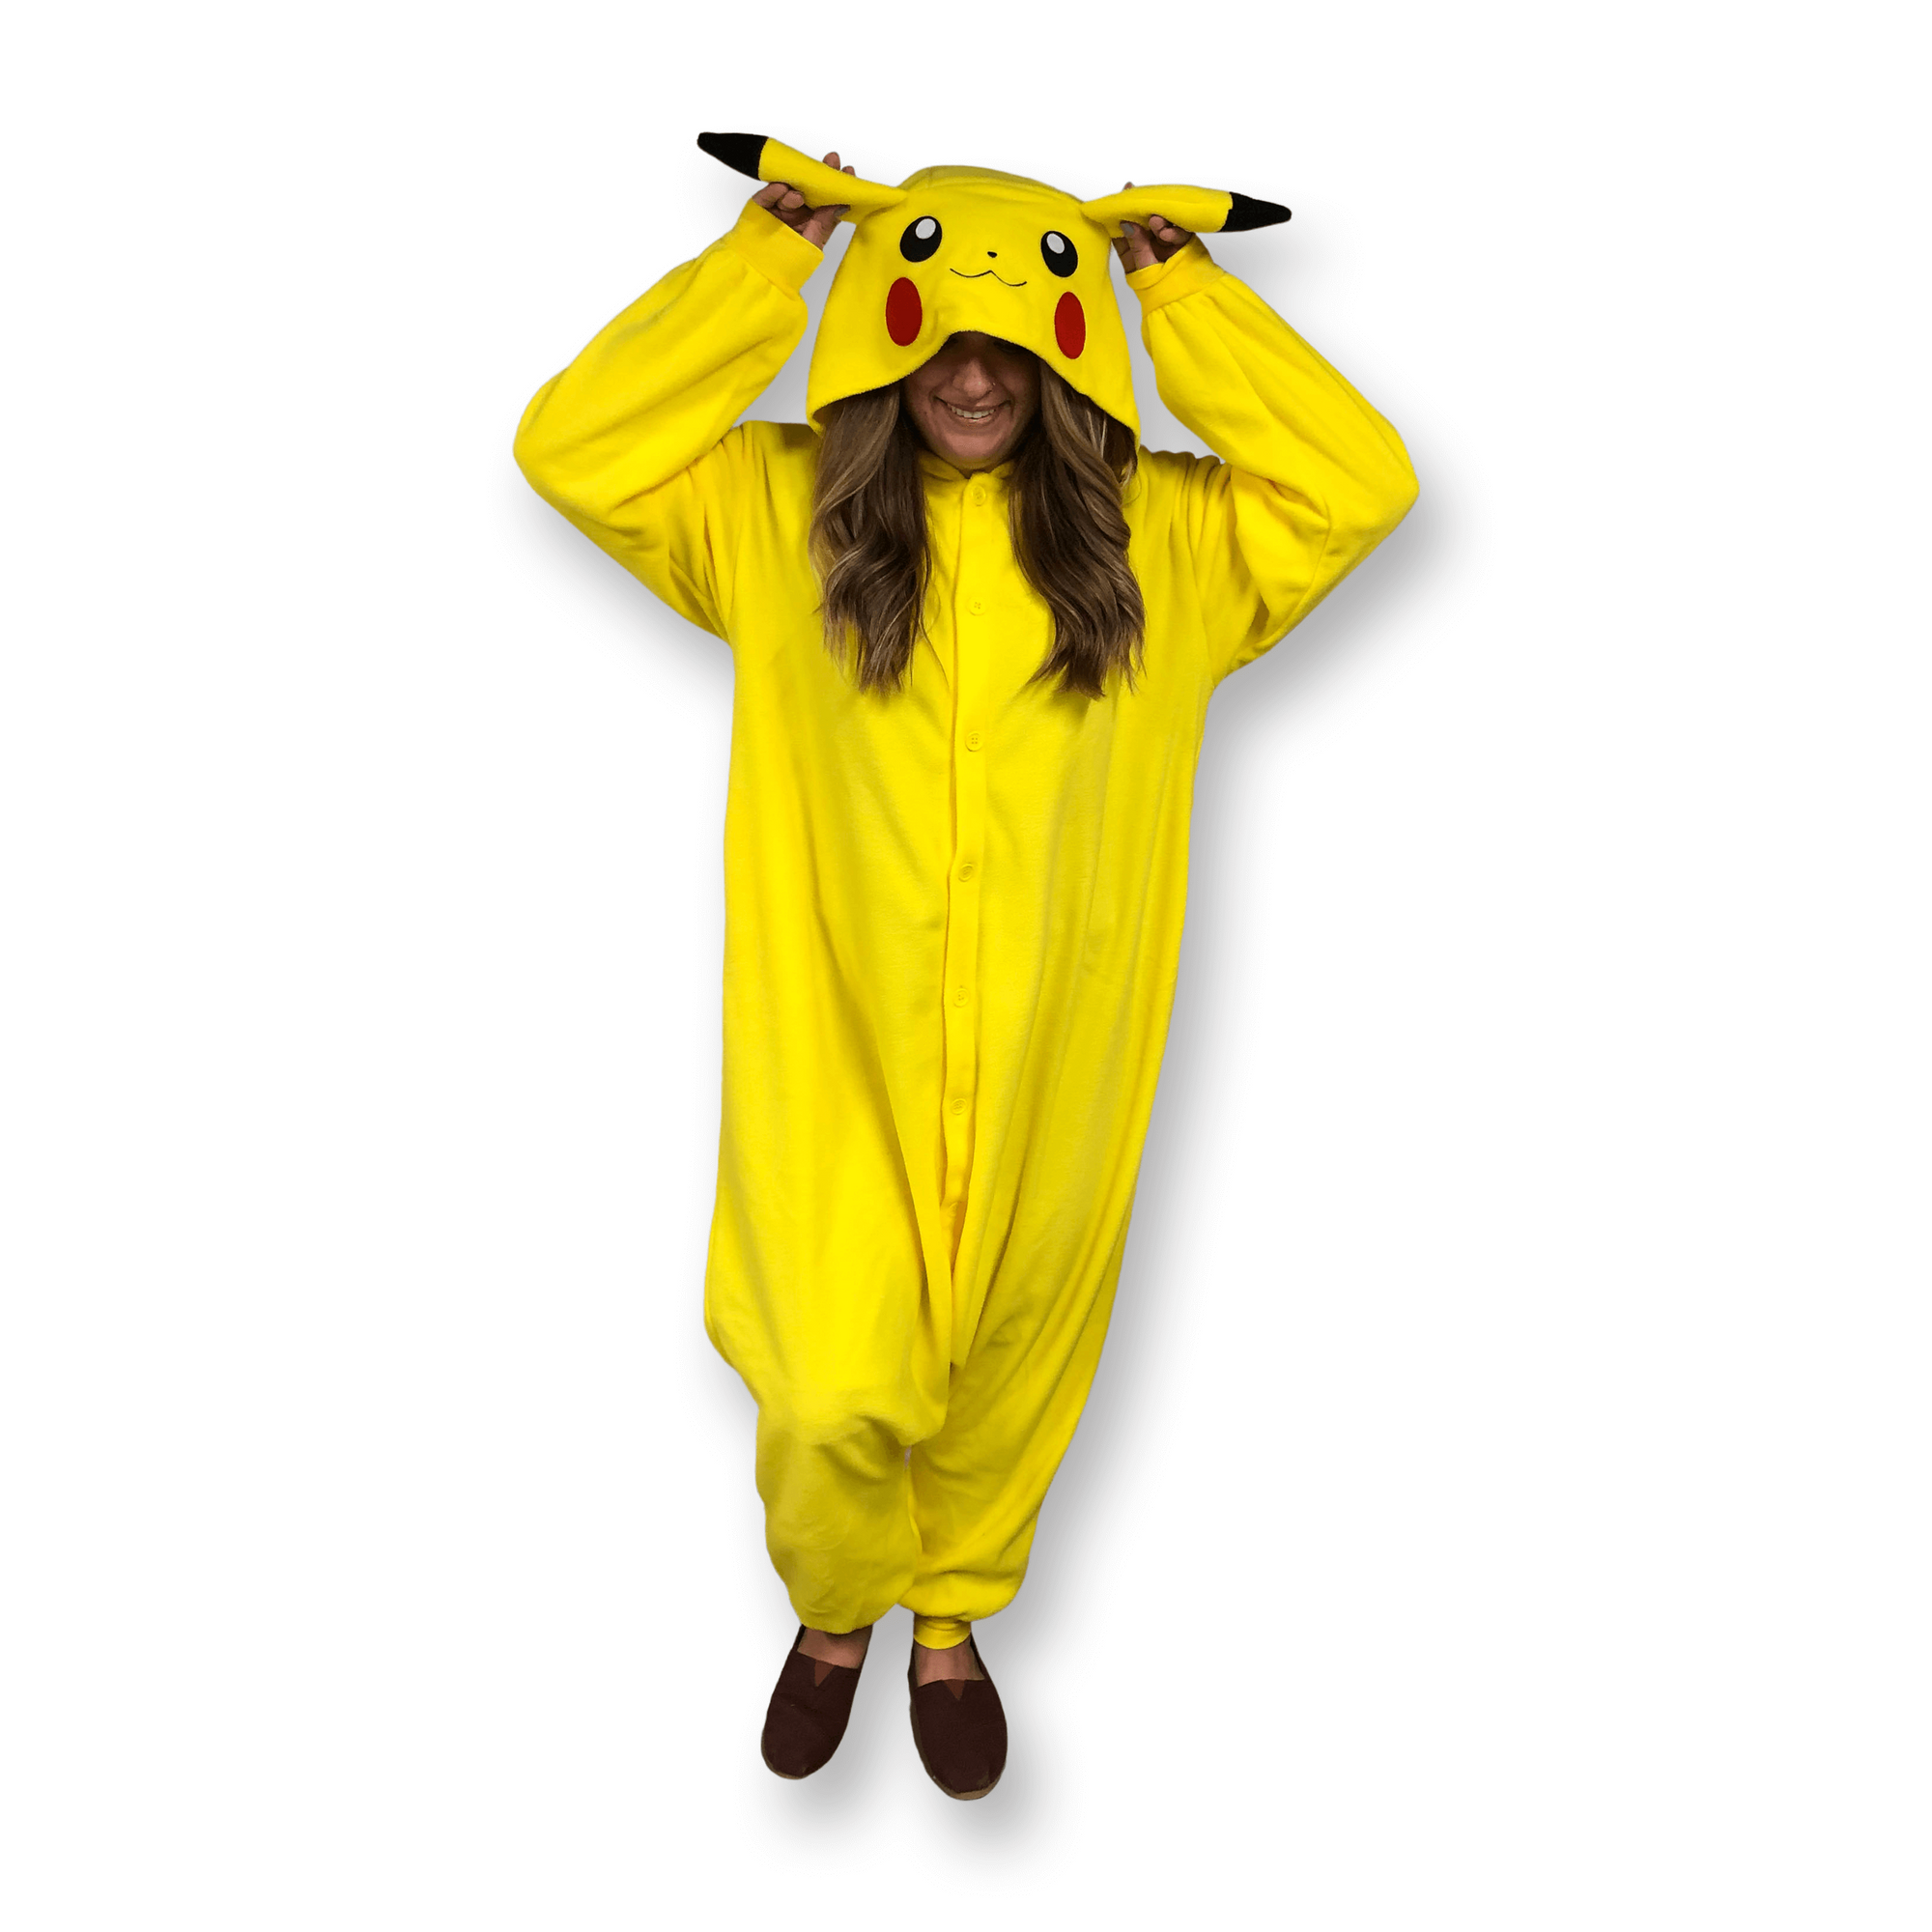 Kakkoii Panama - Kigurumis (pijamas) para Adultos y niños #kigurumi #onesie  #onesies #pijama #pijamas #pikachu #pokemon